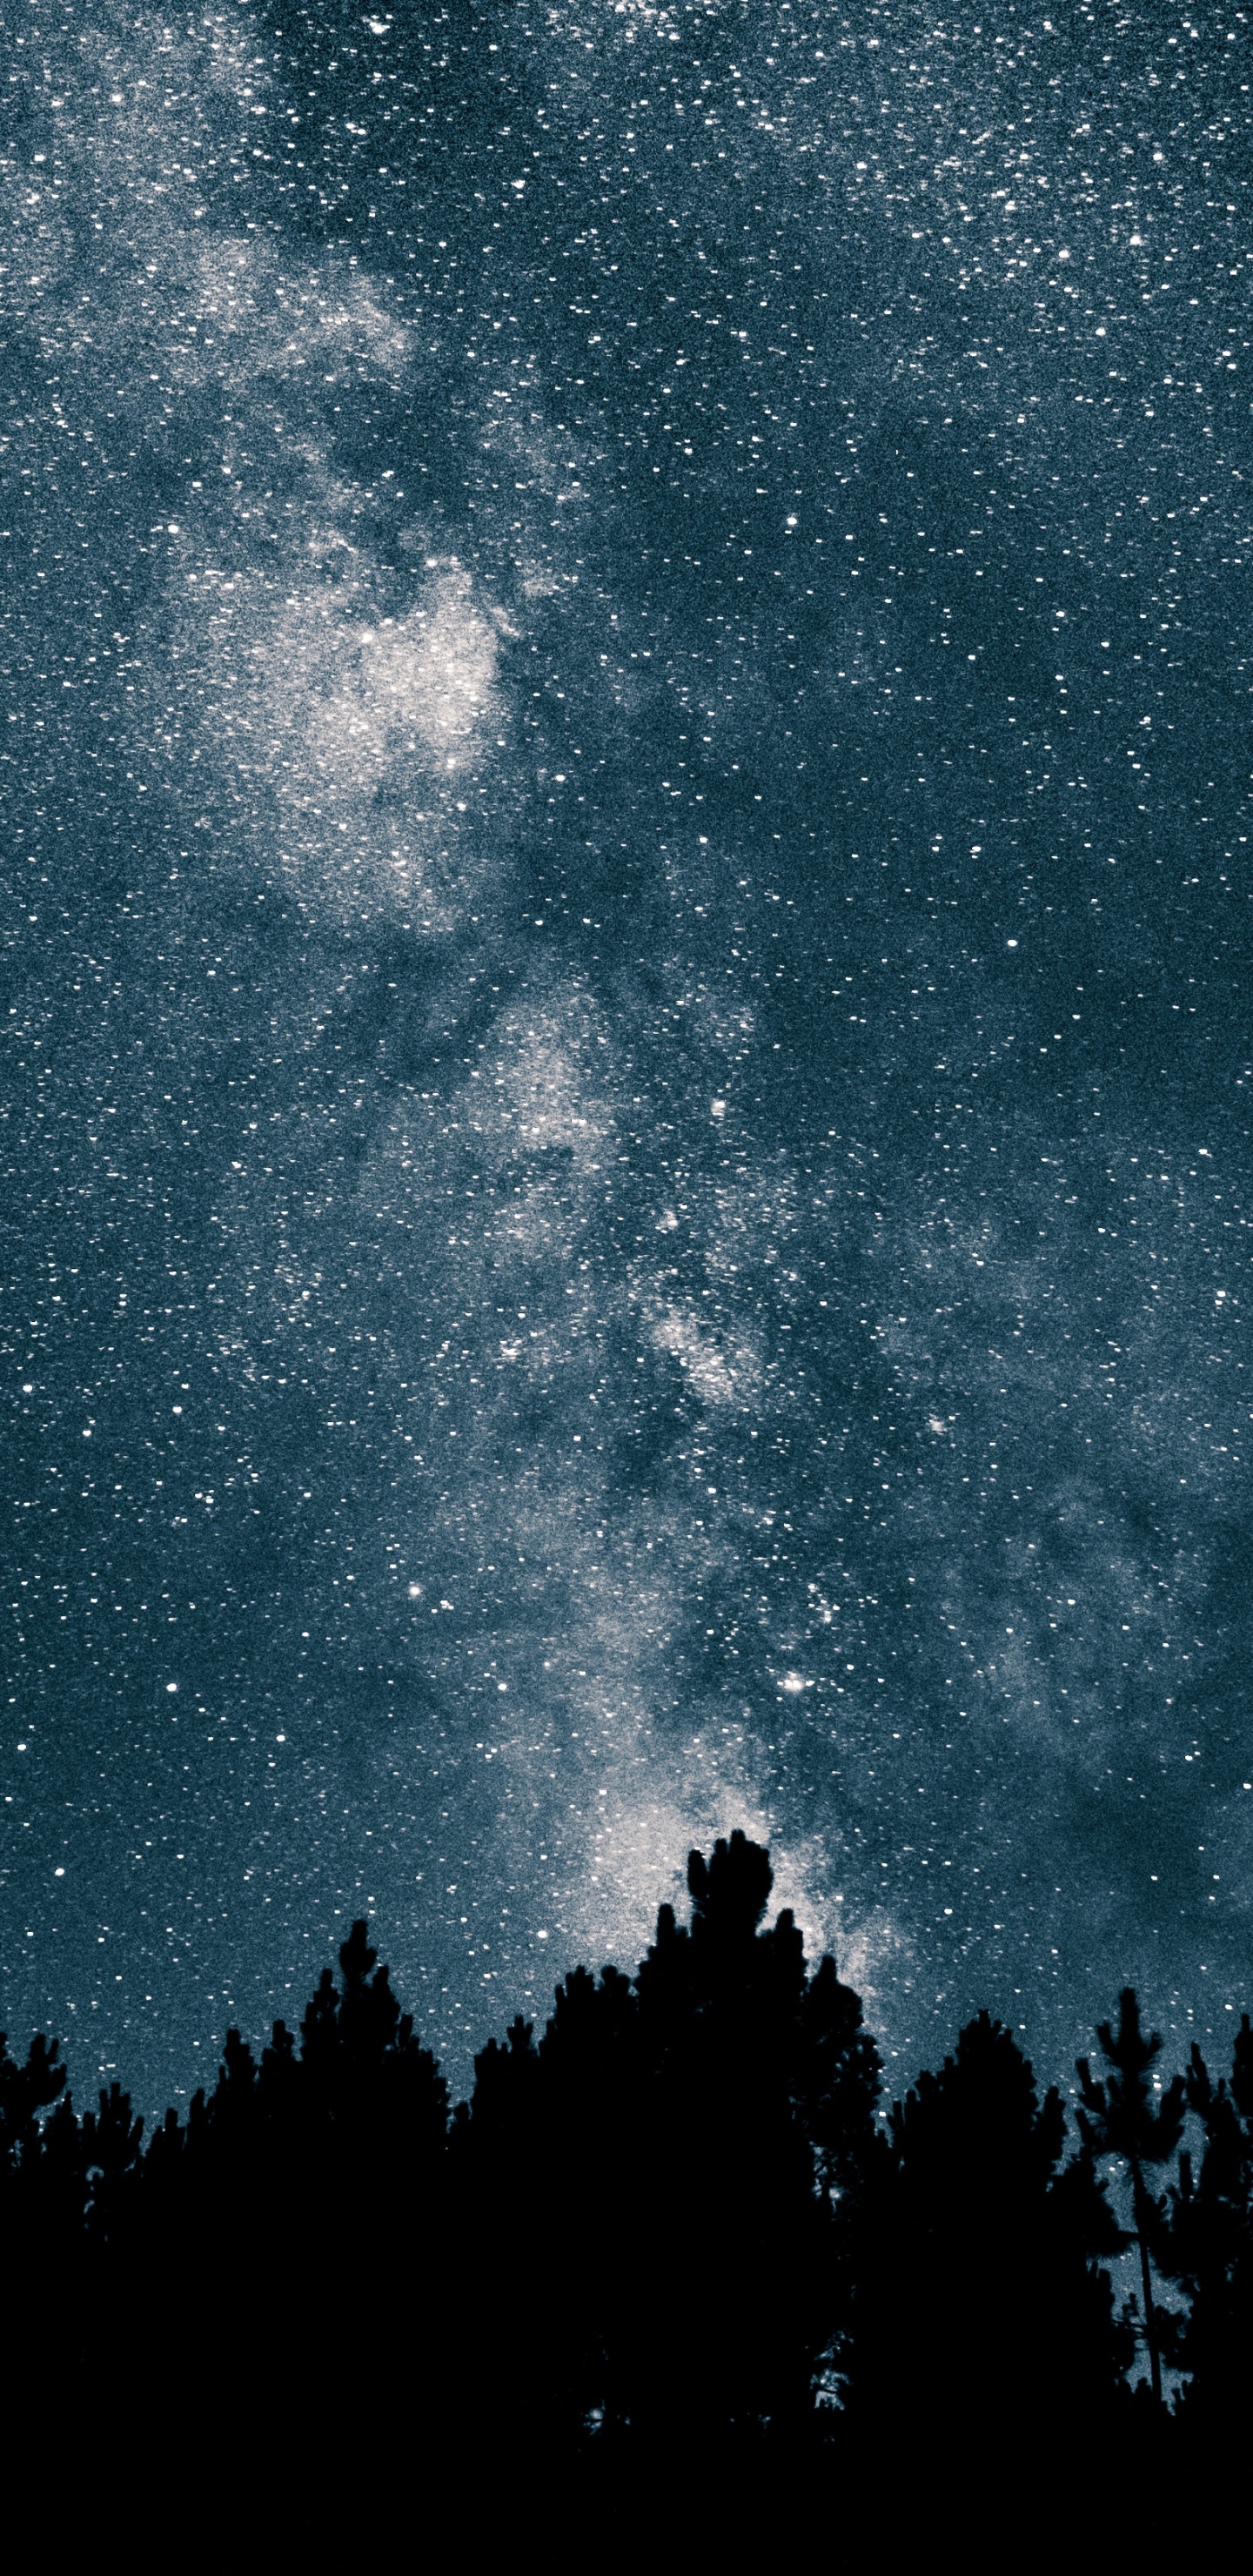 银河系, 明星, 夜晚的天空, 天文学, 天文学对象 壁纸 1440x2960 允许